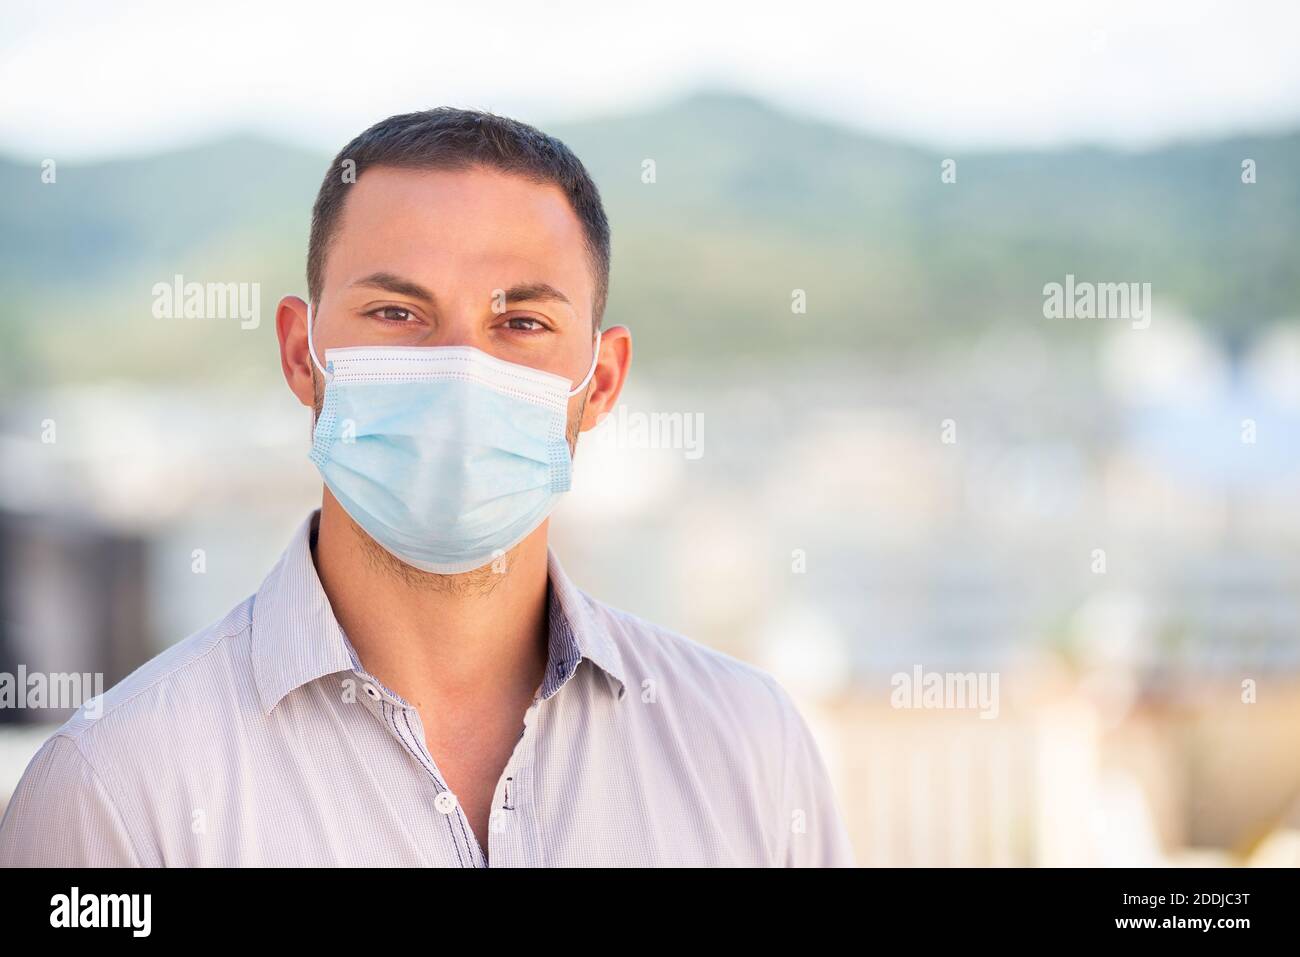 Hombre joven con una máscara de protección contra el coronavirus Foto de stock